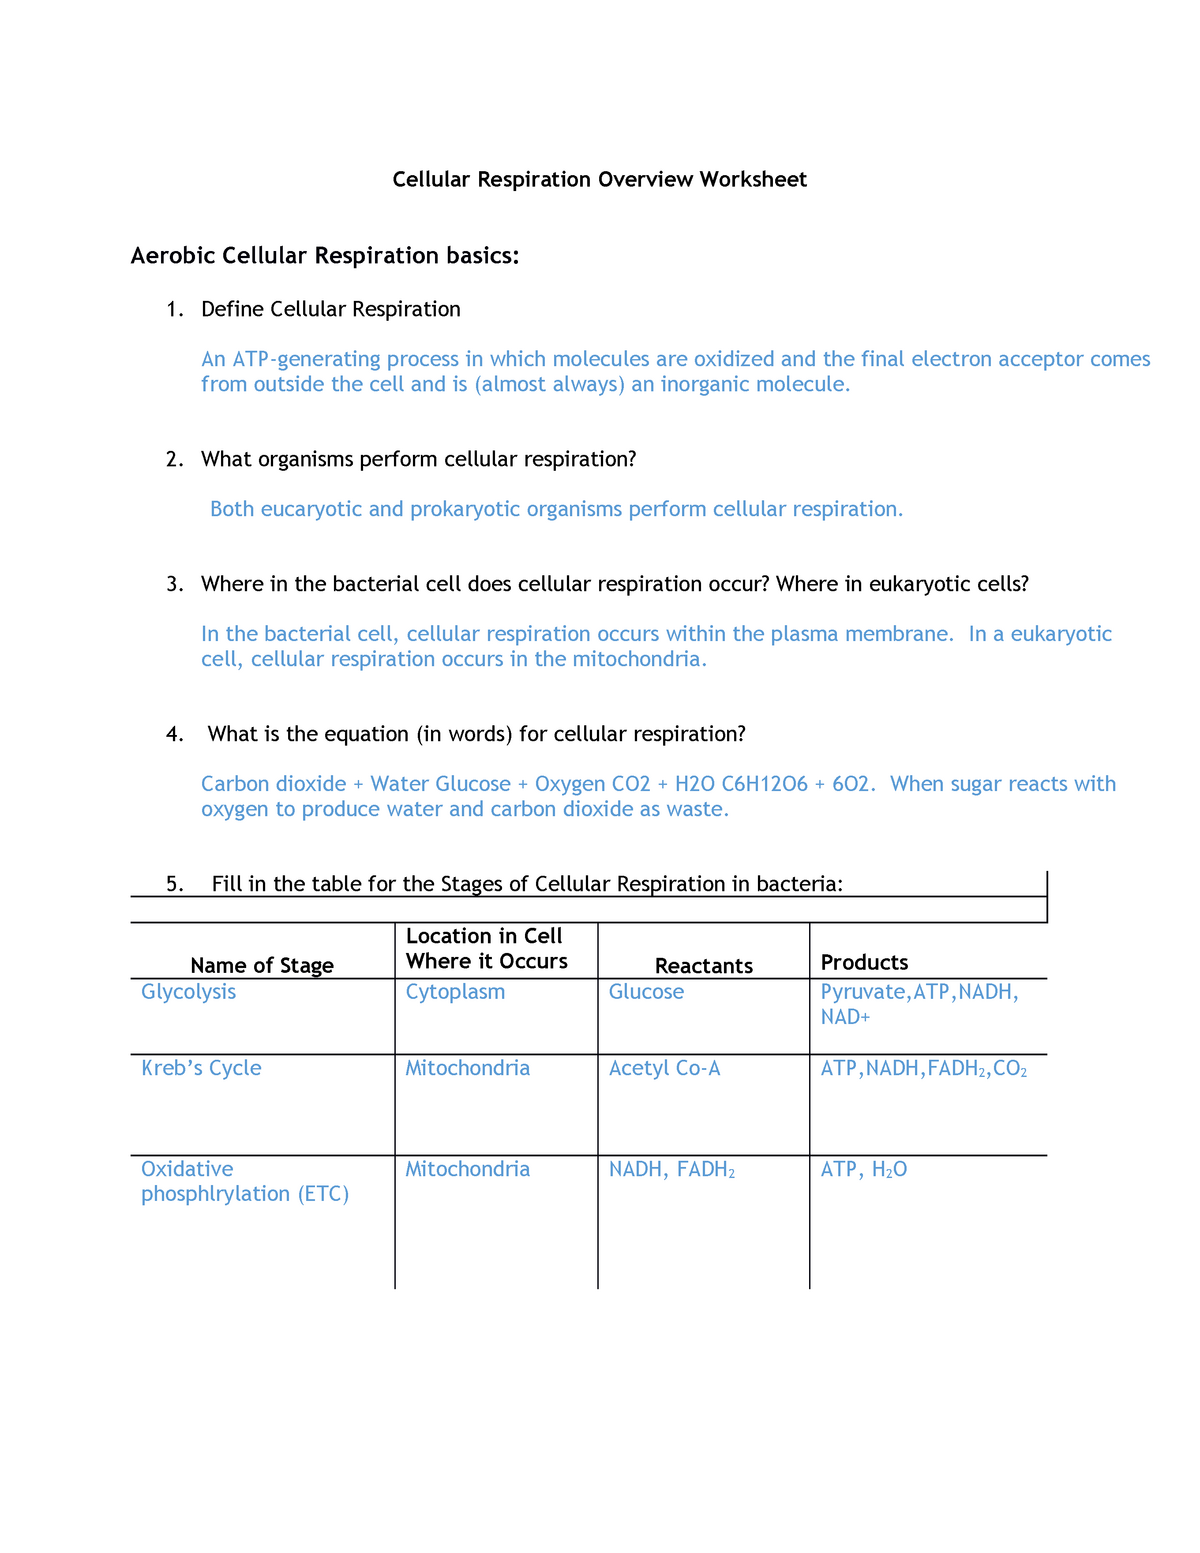 Cellular Respiration Overview Worksheet - BIOL-20 - Microbiology Throughout Cellular Respiration Worksheet Answer Key